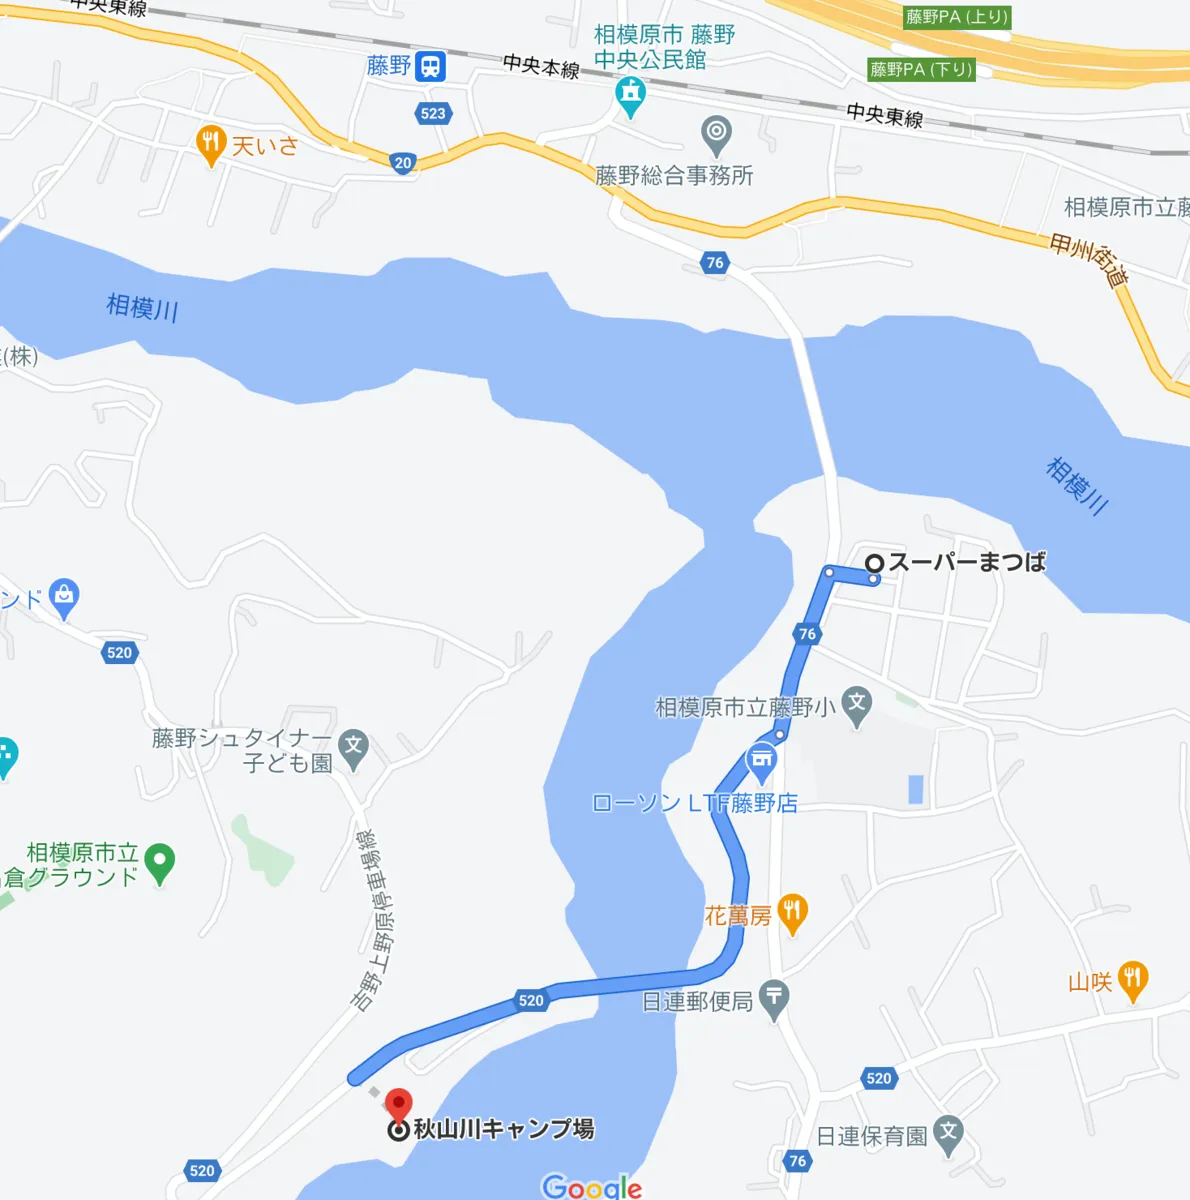 从松叶到秋山川露营地的地图和路线